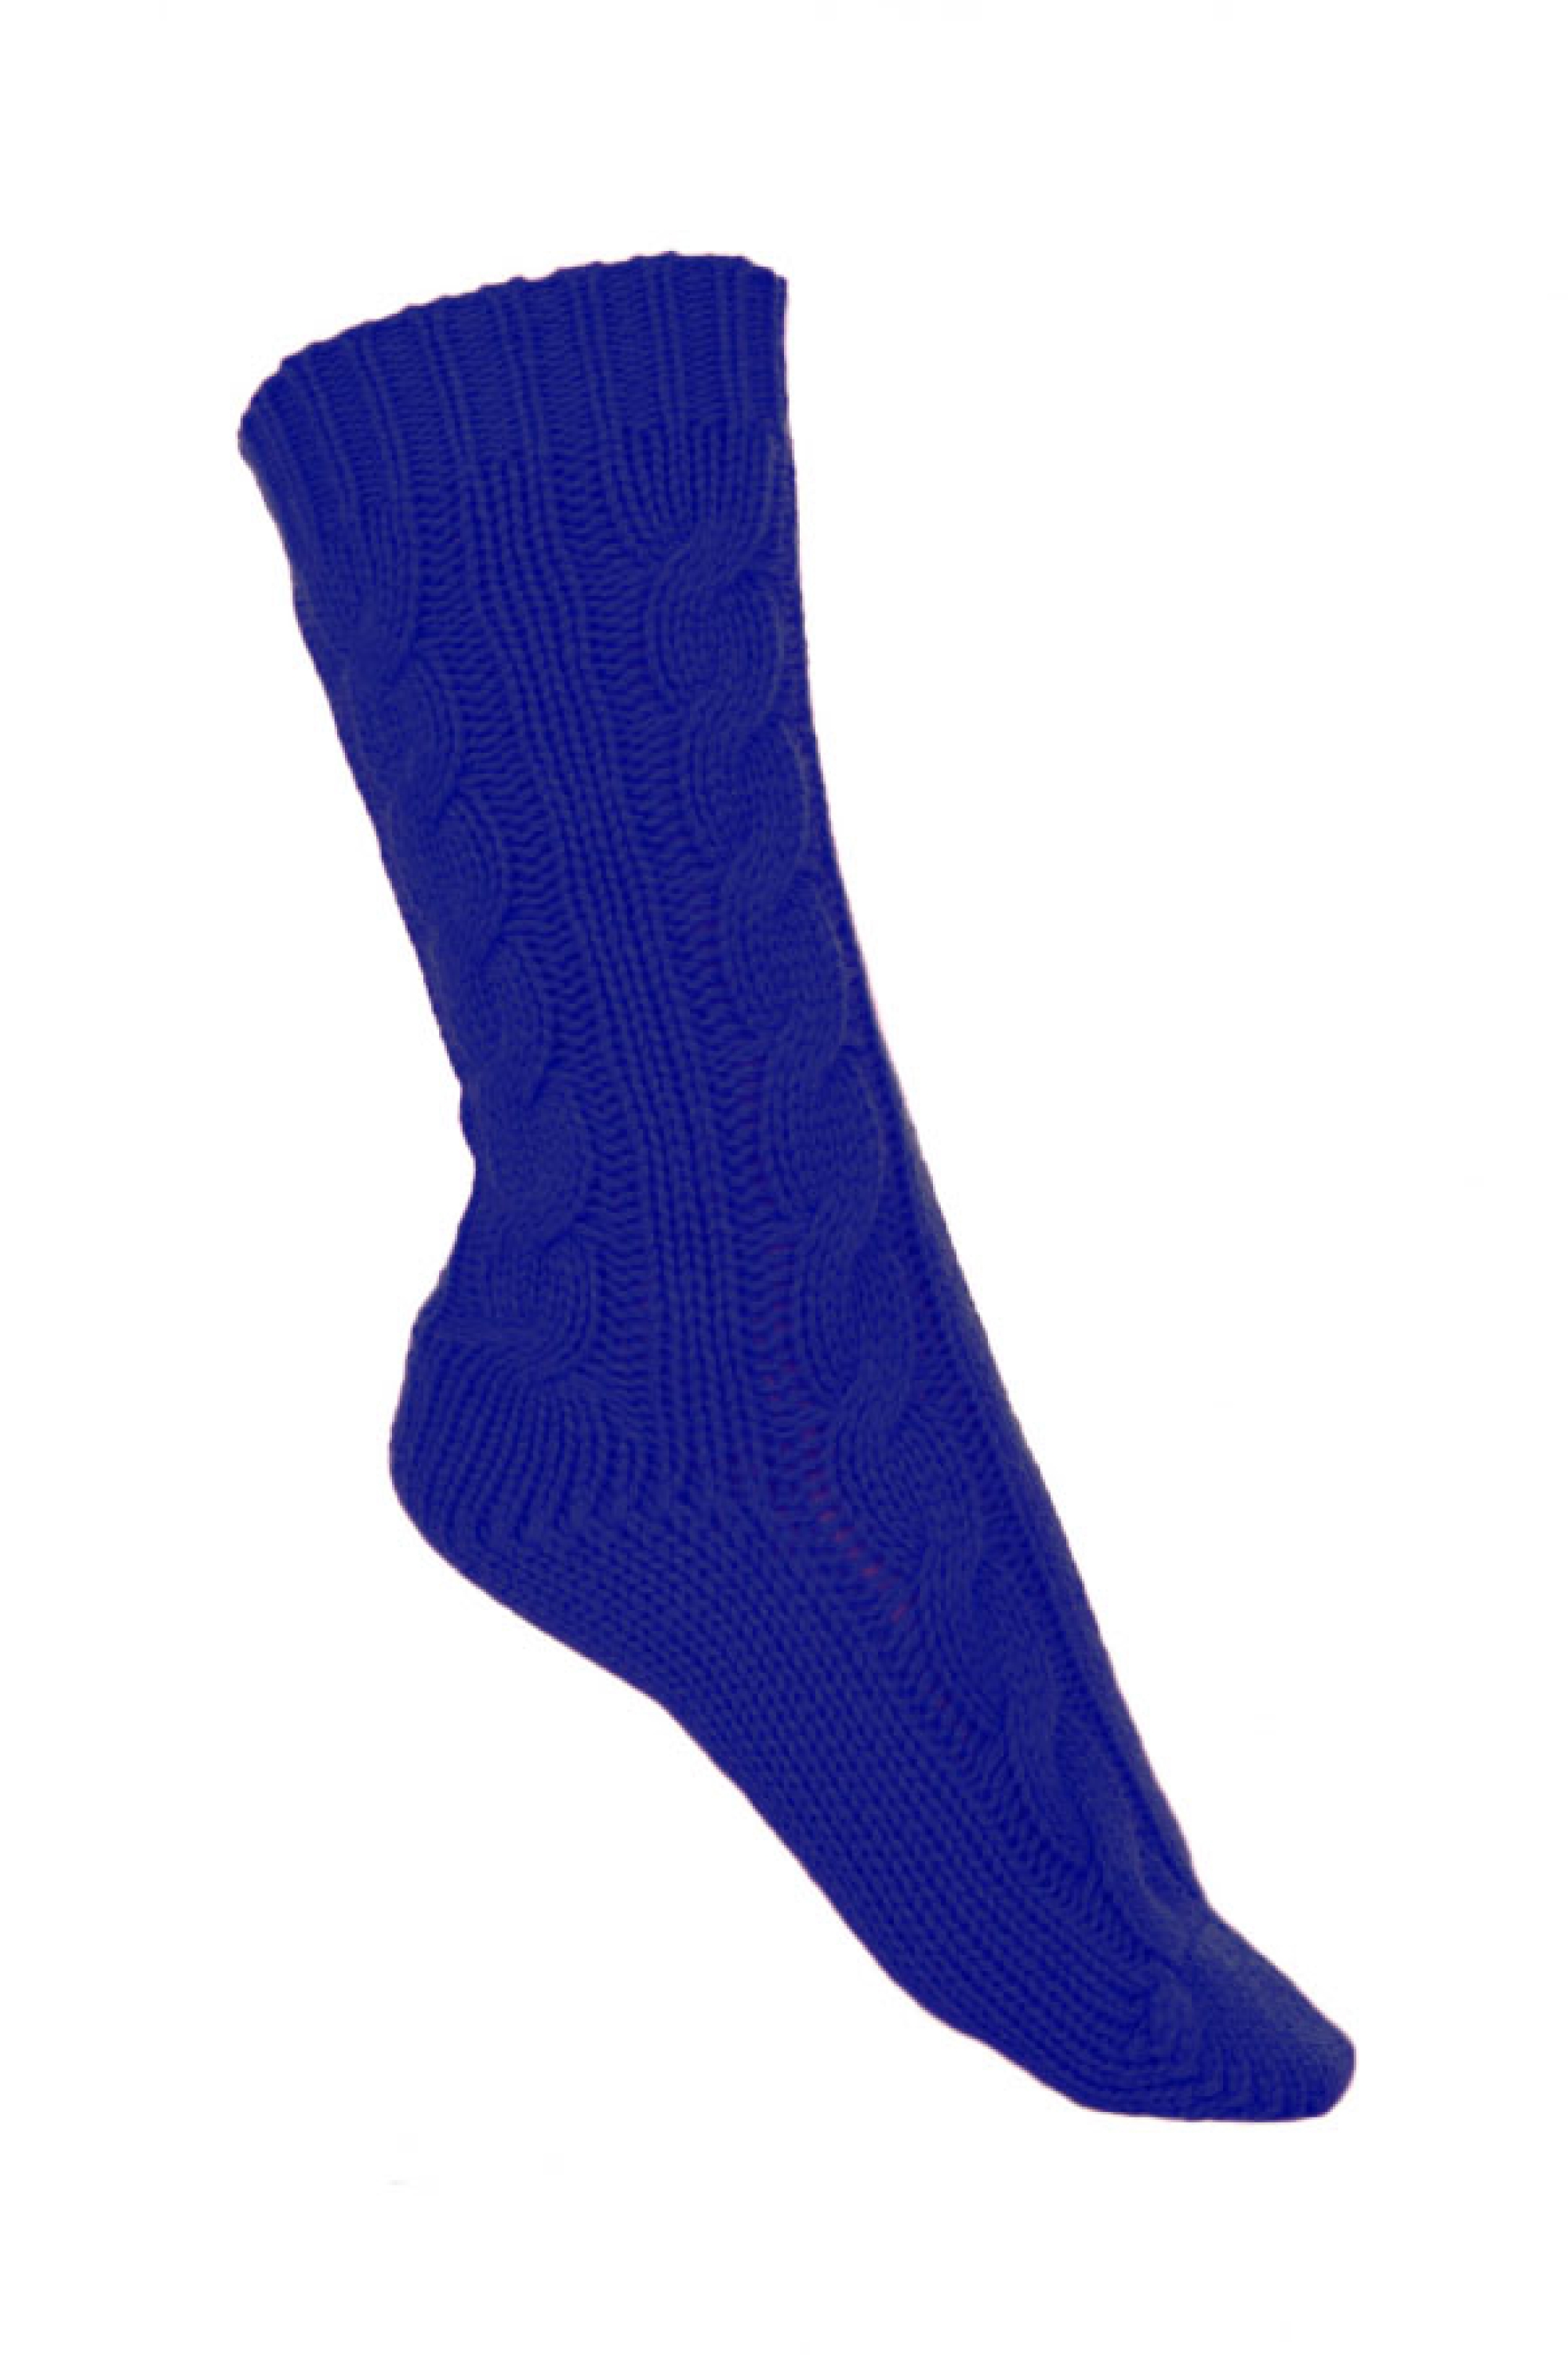 Cachemire accessoires chaussettes pedibus bleu regata 37 41